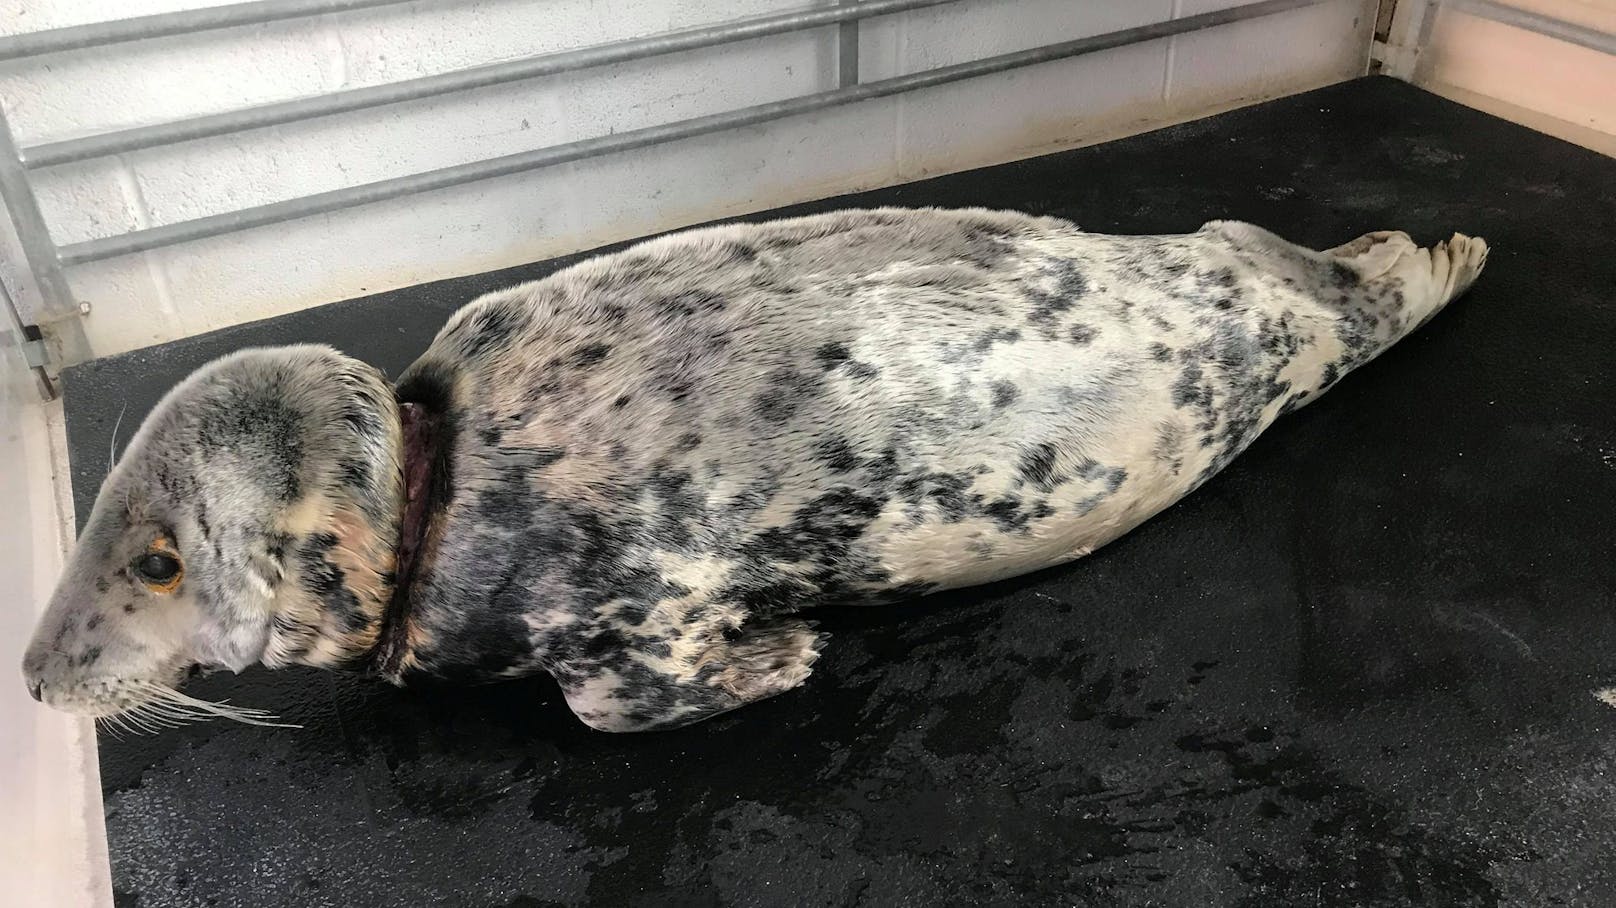 Ganze zwei Jahre hatte die kleine Robbe mit einem Angeldraht um den Hals leben müssen. Durch einen furchtbaren Zufall, wurde sie nun gerettet. 